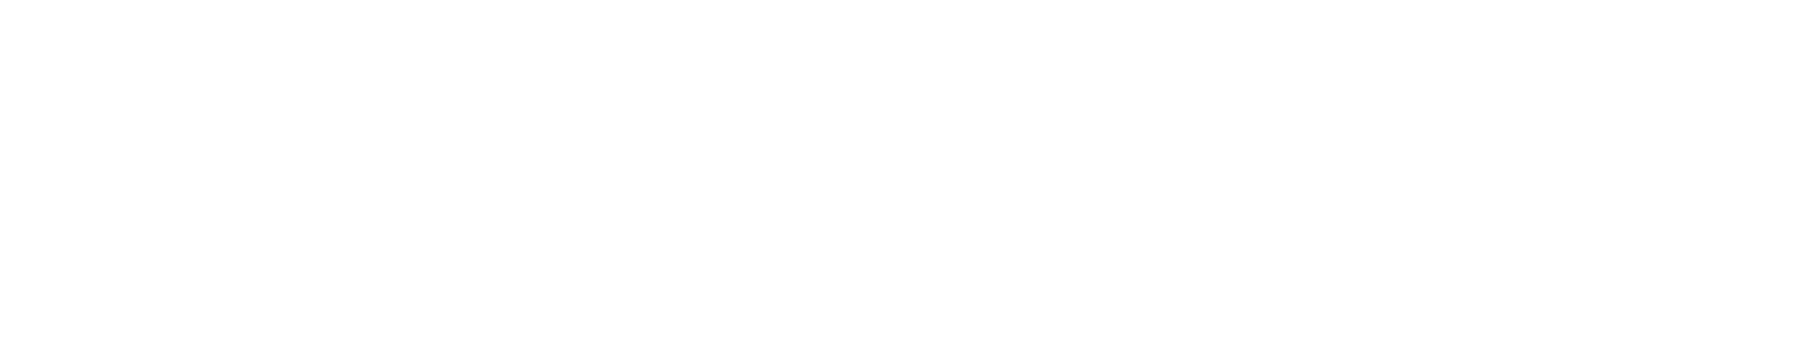 北京科技大学材料科学与工程学院